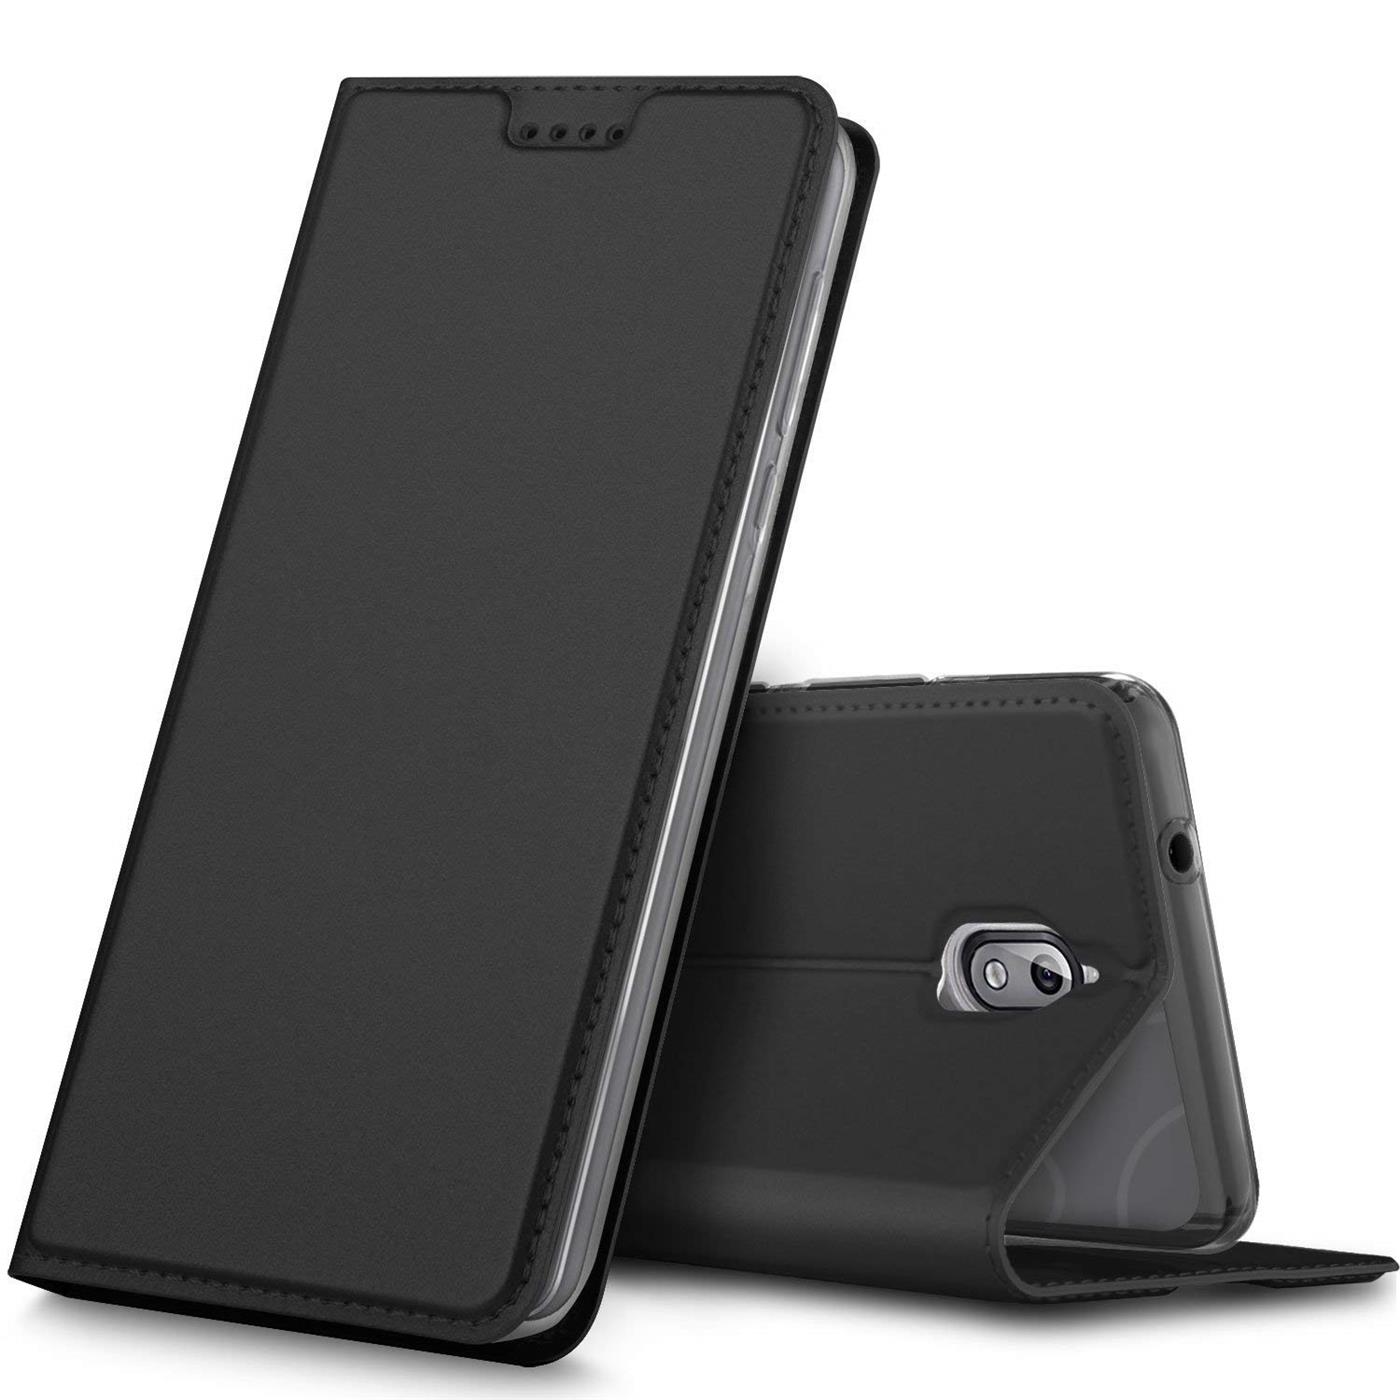 Pouzdro FLIP pro Nokia 3.1 černé